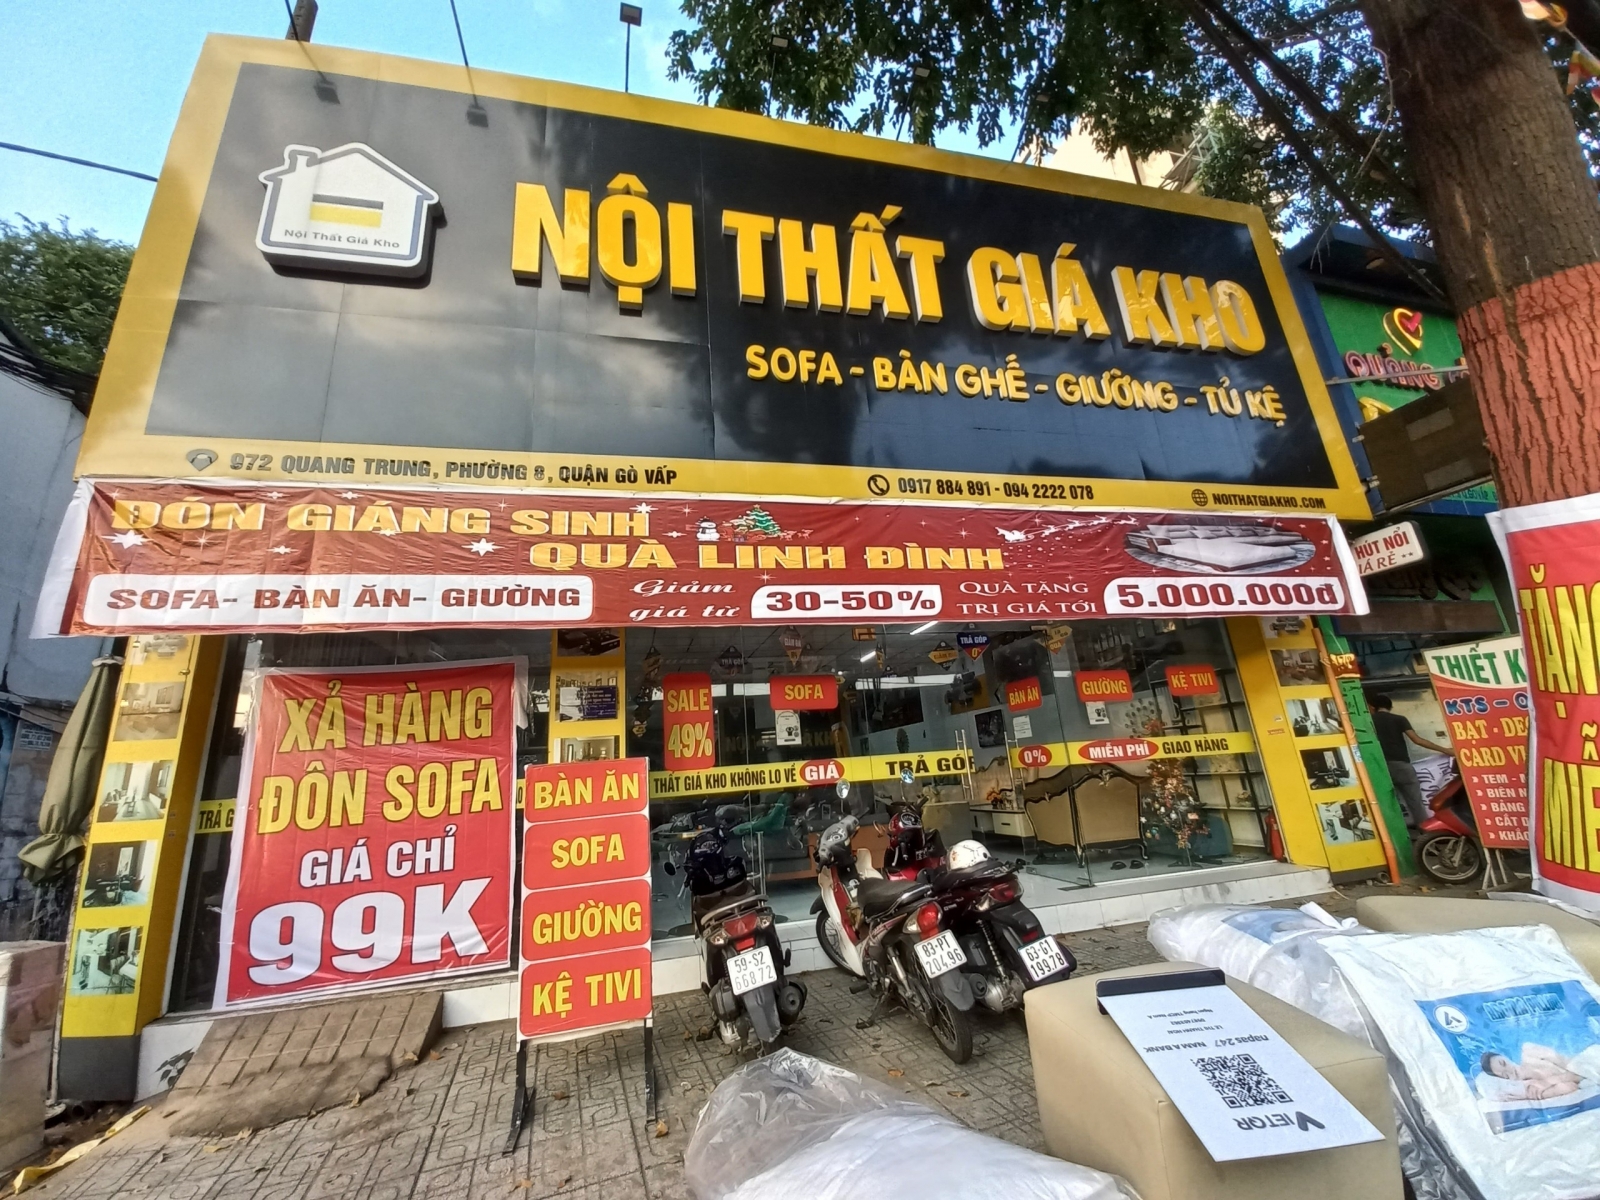 Nội thất thông minh giá rẻ tại Tp Hồ Chí Minh